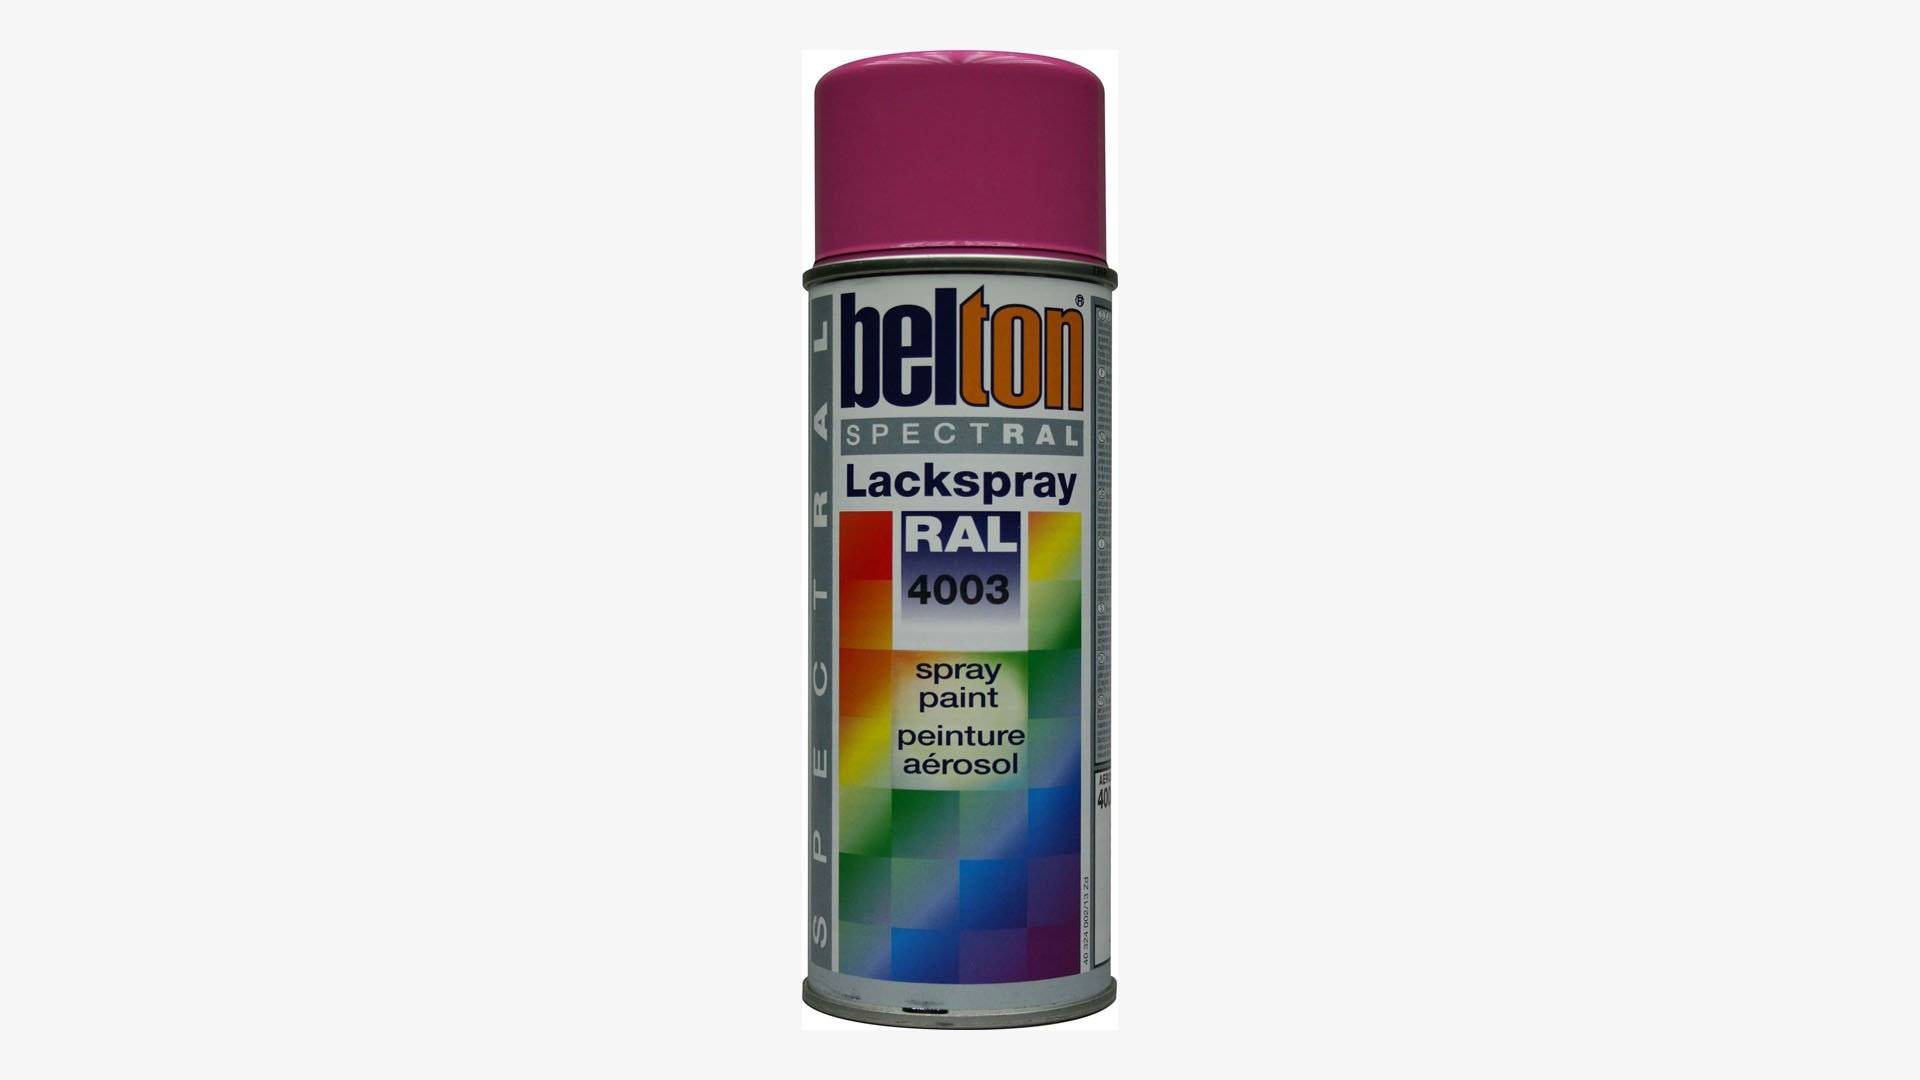 Belton - SpectRAL Spraydose RAL 4003 Erikaviolett (150ml) von Unbekannt